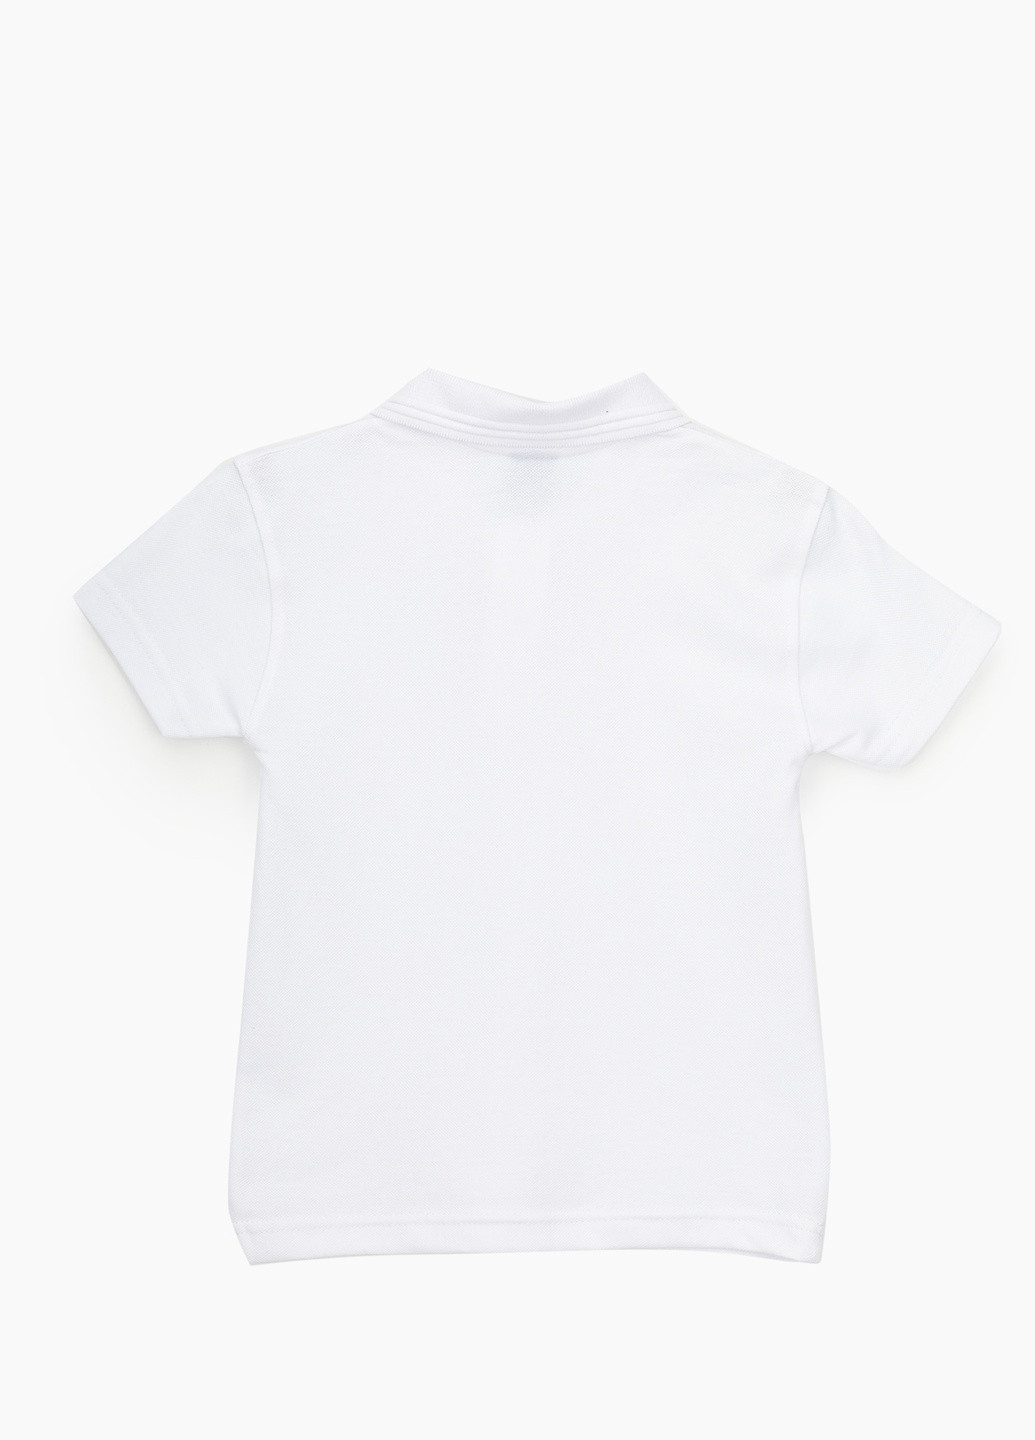 Белая детская футболка-поло для мальчика Pitiki однотонная